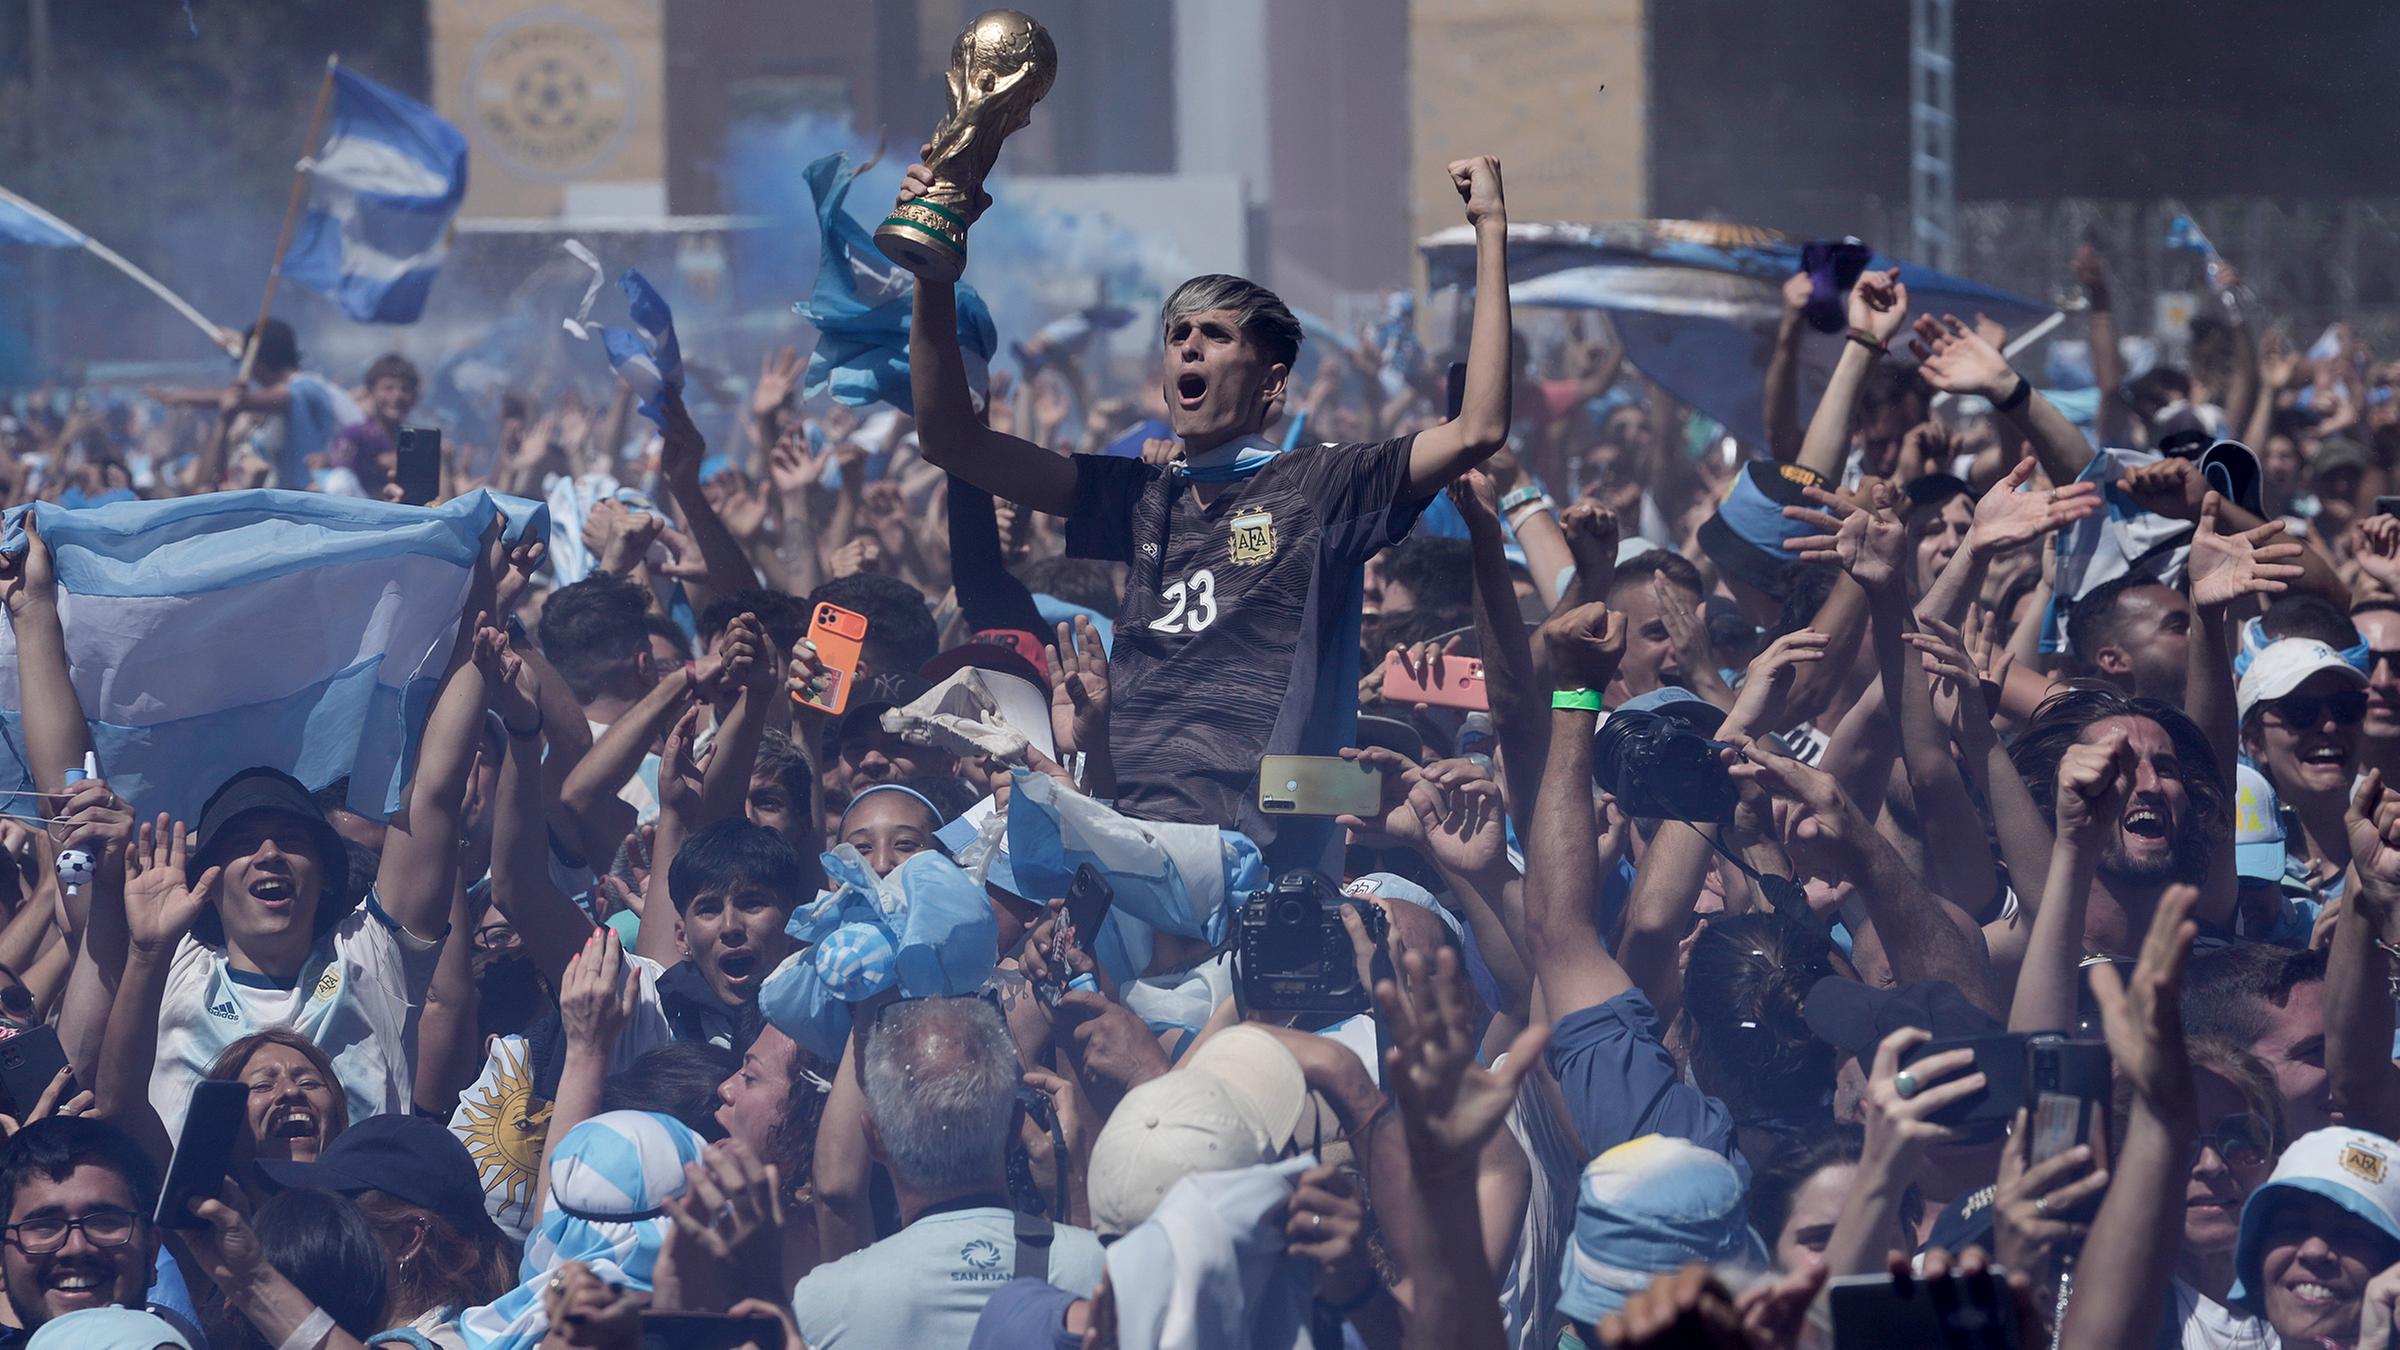 Argentinische Fußballfans feiern während des Spiels ihrer Mannschaft.